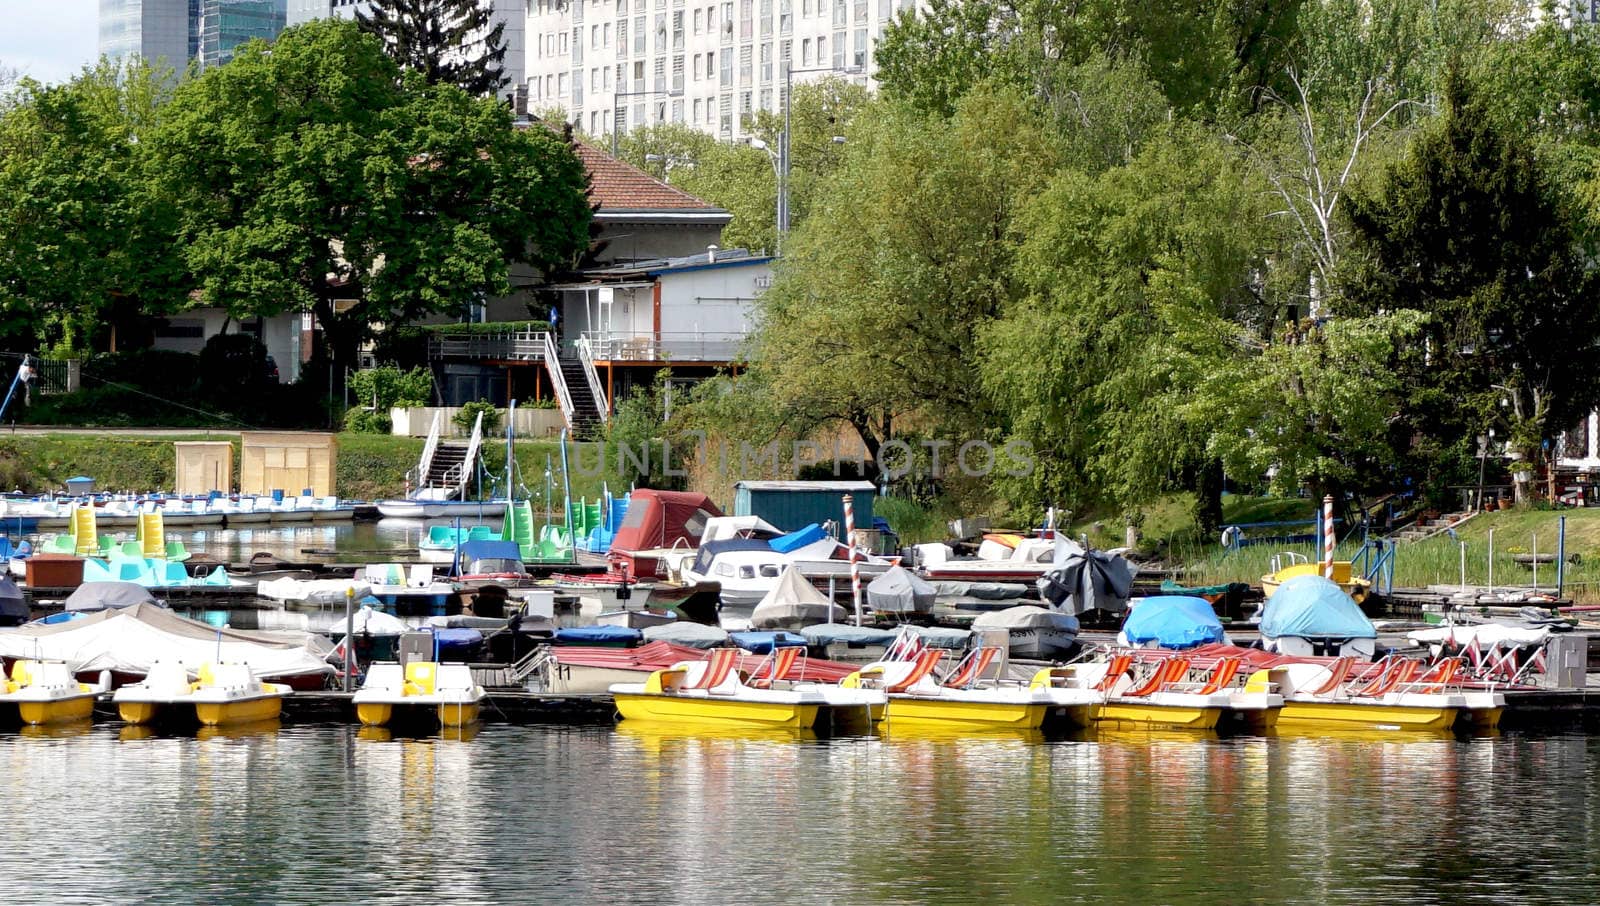 Boats in Danube River Landscape by polarbearstudio